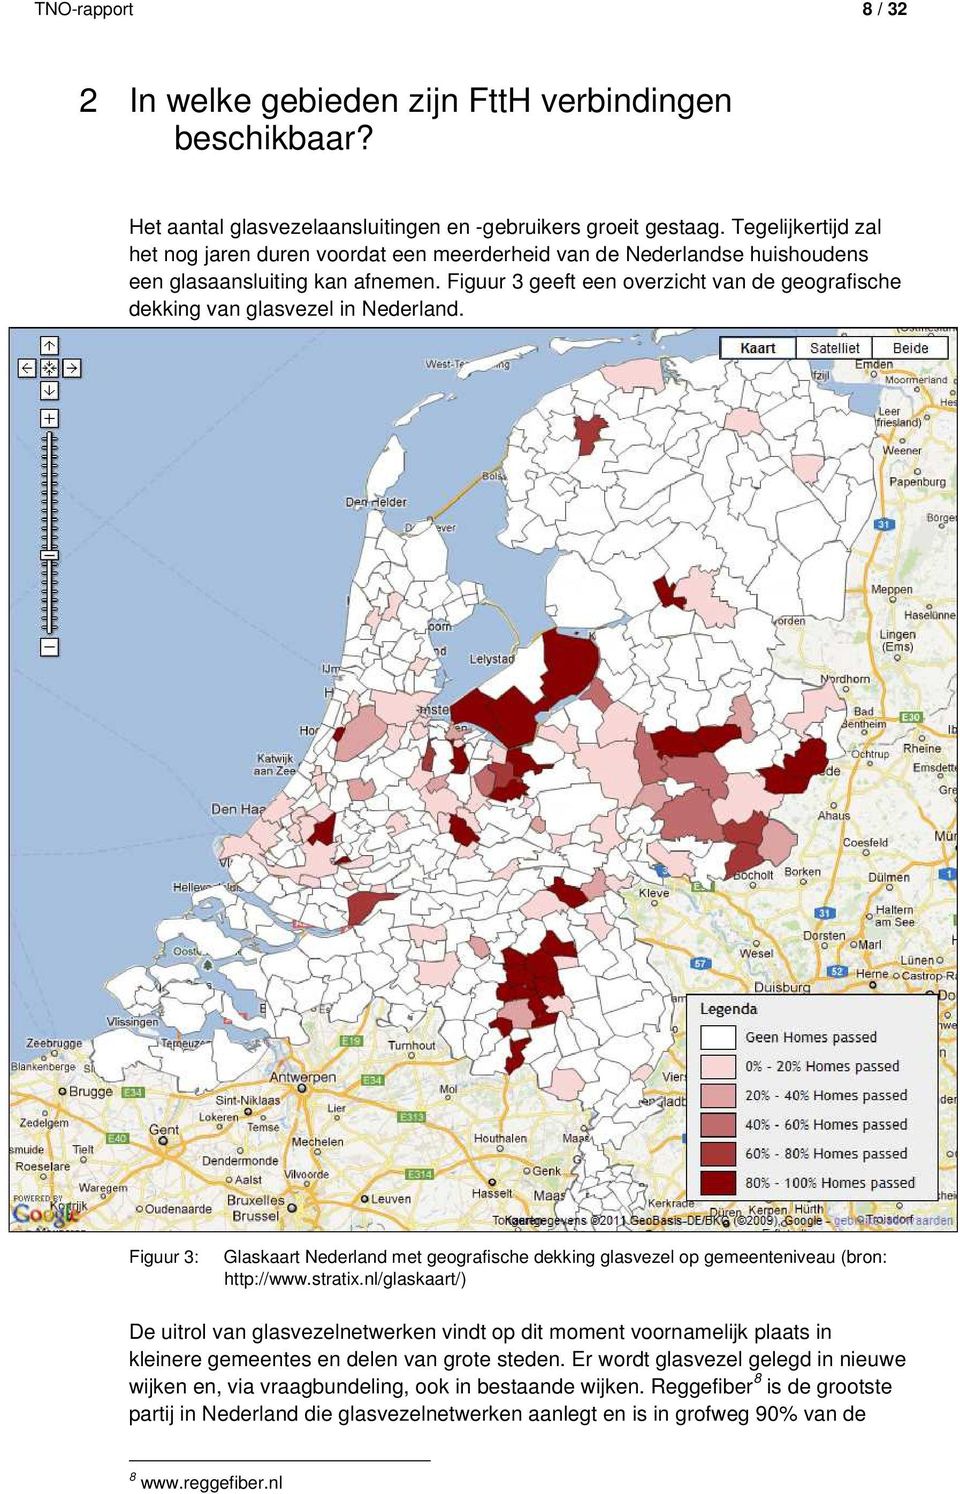 Figuur 3 geeft een overzicht van de geografische dekking van glasvezel in Nederland. Figuur 3: Glaskaart Nederland met geografische dekking glasvezel op gemeenteniveau (bron: http://www.stratix.